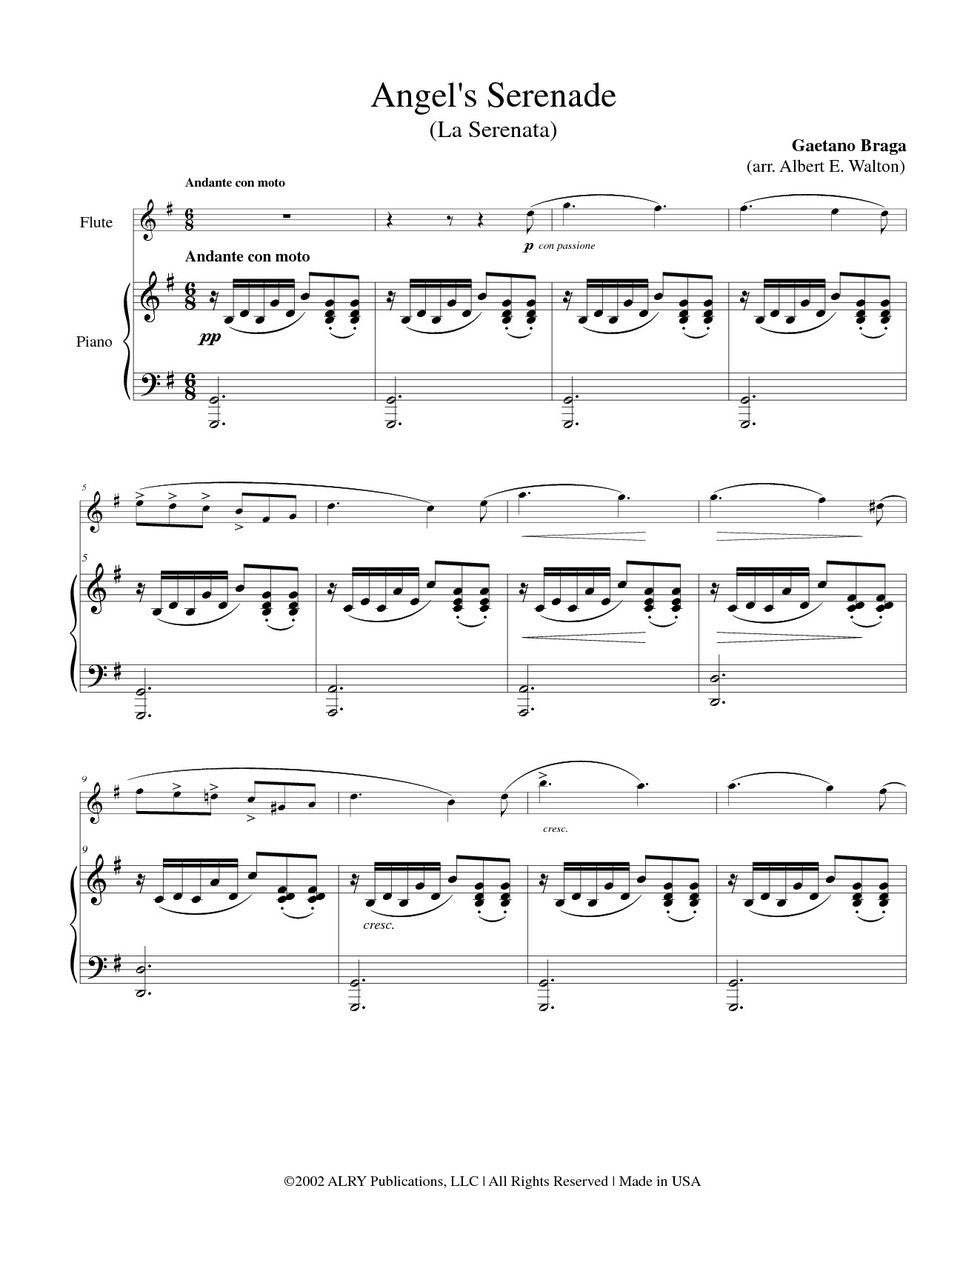 天使のセレナード（ガエターノ・ブラーガ）（フルート+ピアノ）【Angel's Serenade】 - 吹奏楽の楽譜販売はミュージックエイト